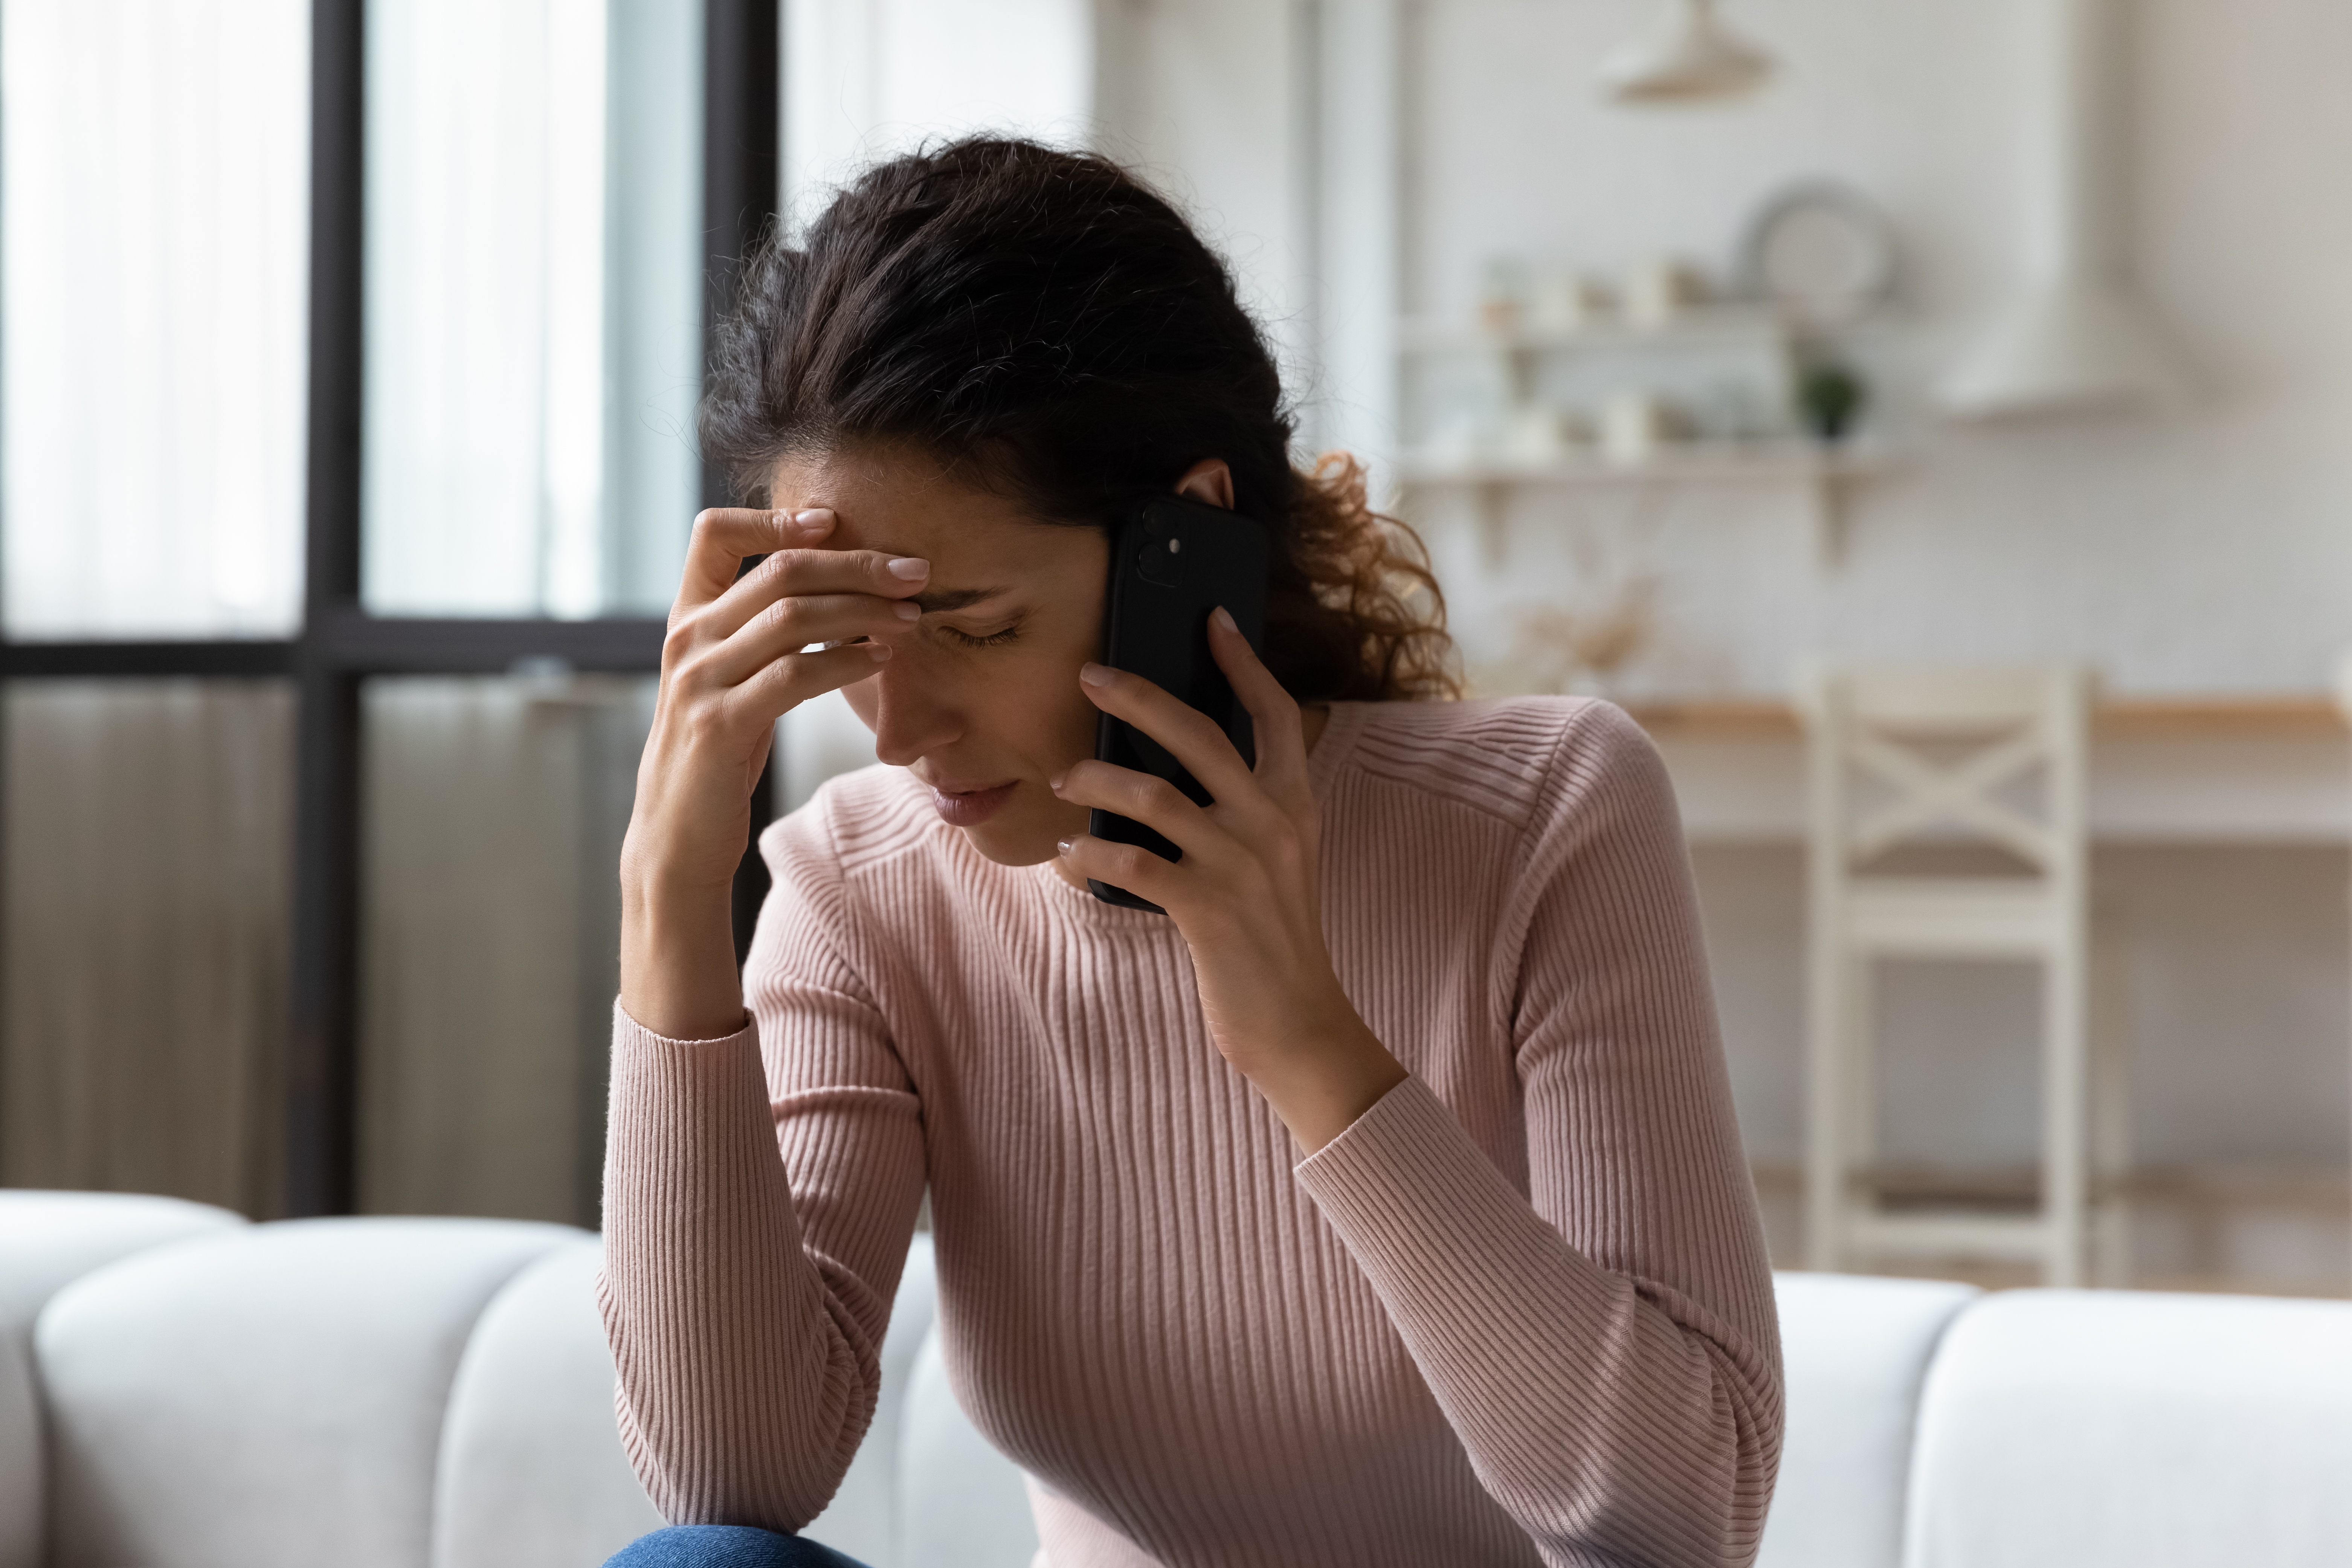 Femme inquiète parlant au téléphone | Source : Shutterstock